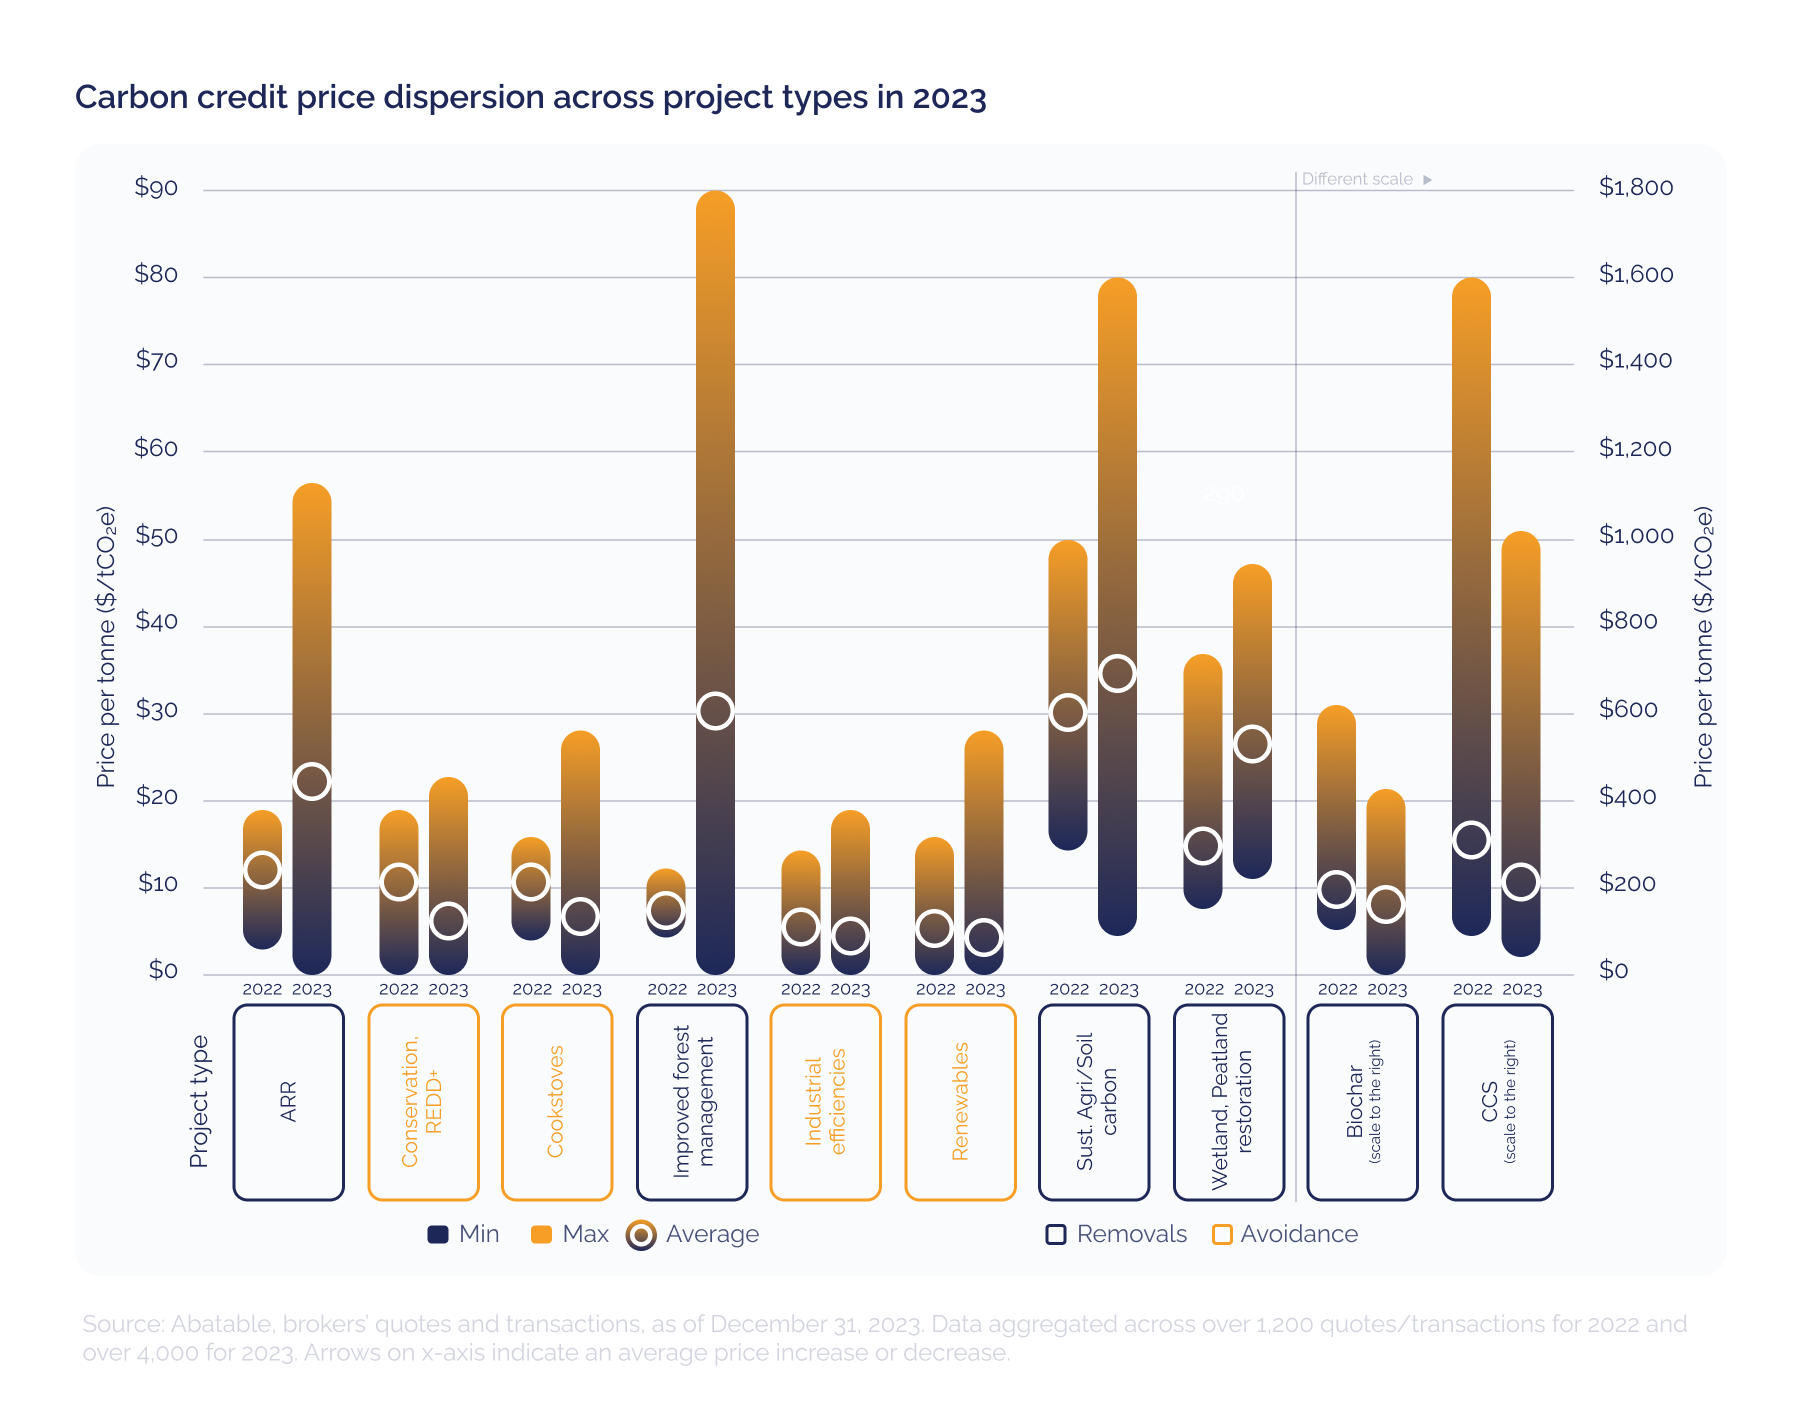 Prisspridning på kolkrediter mellan projekttyper 2023